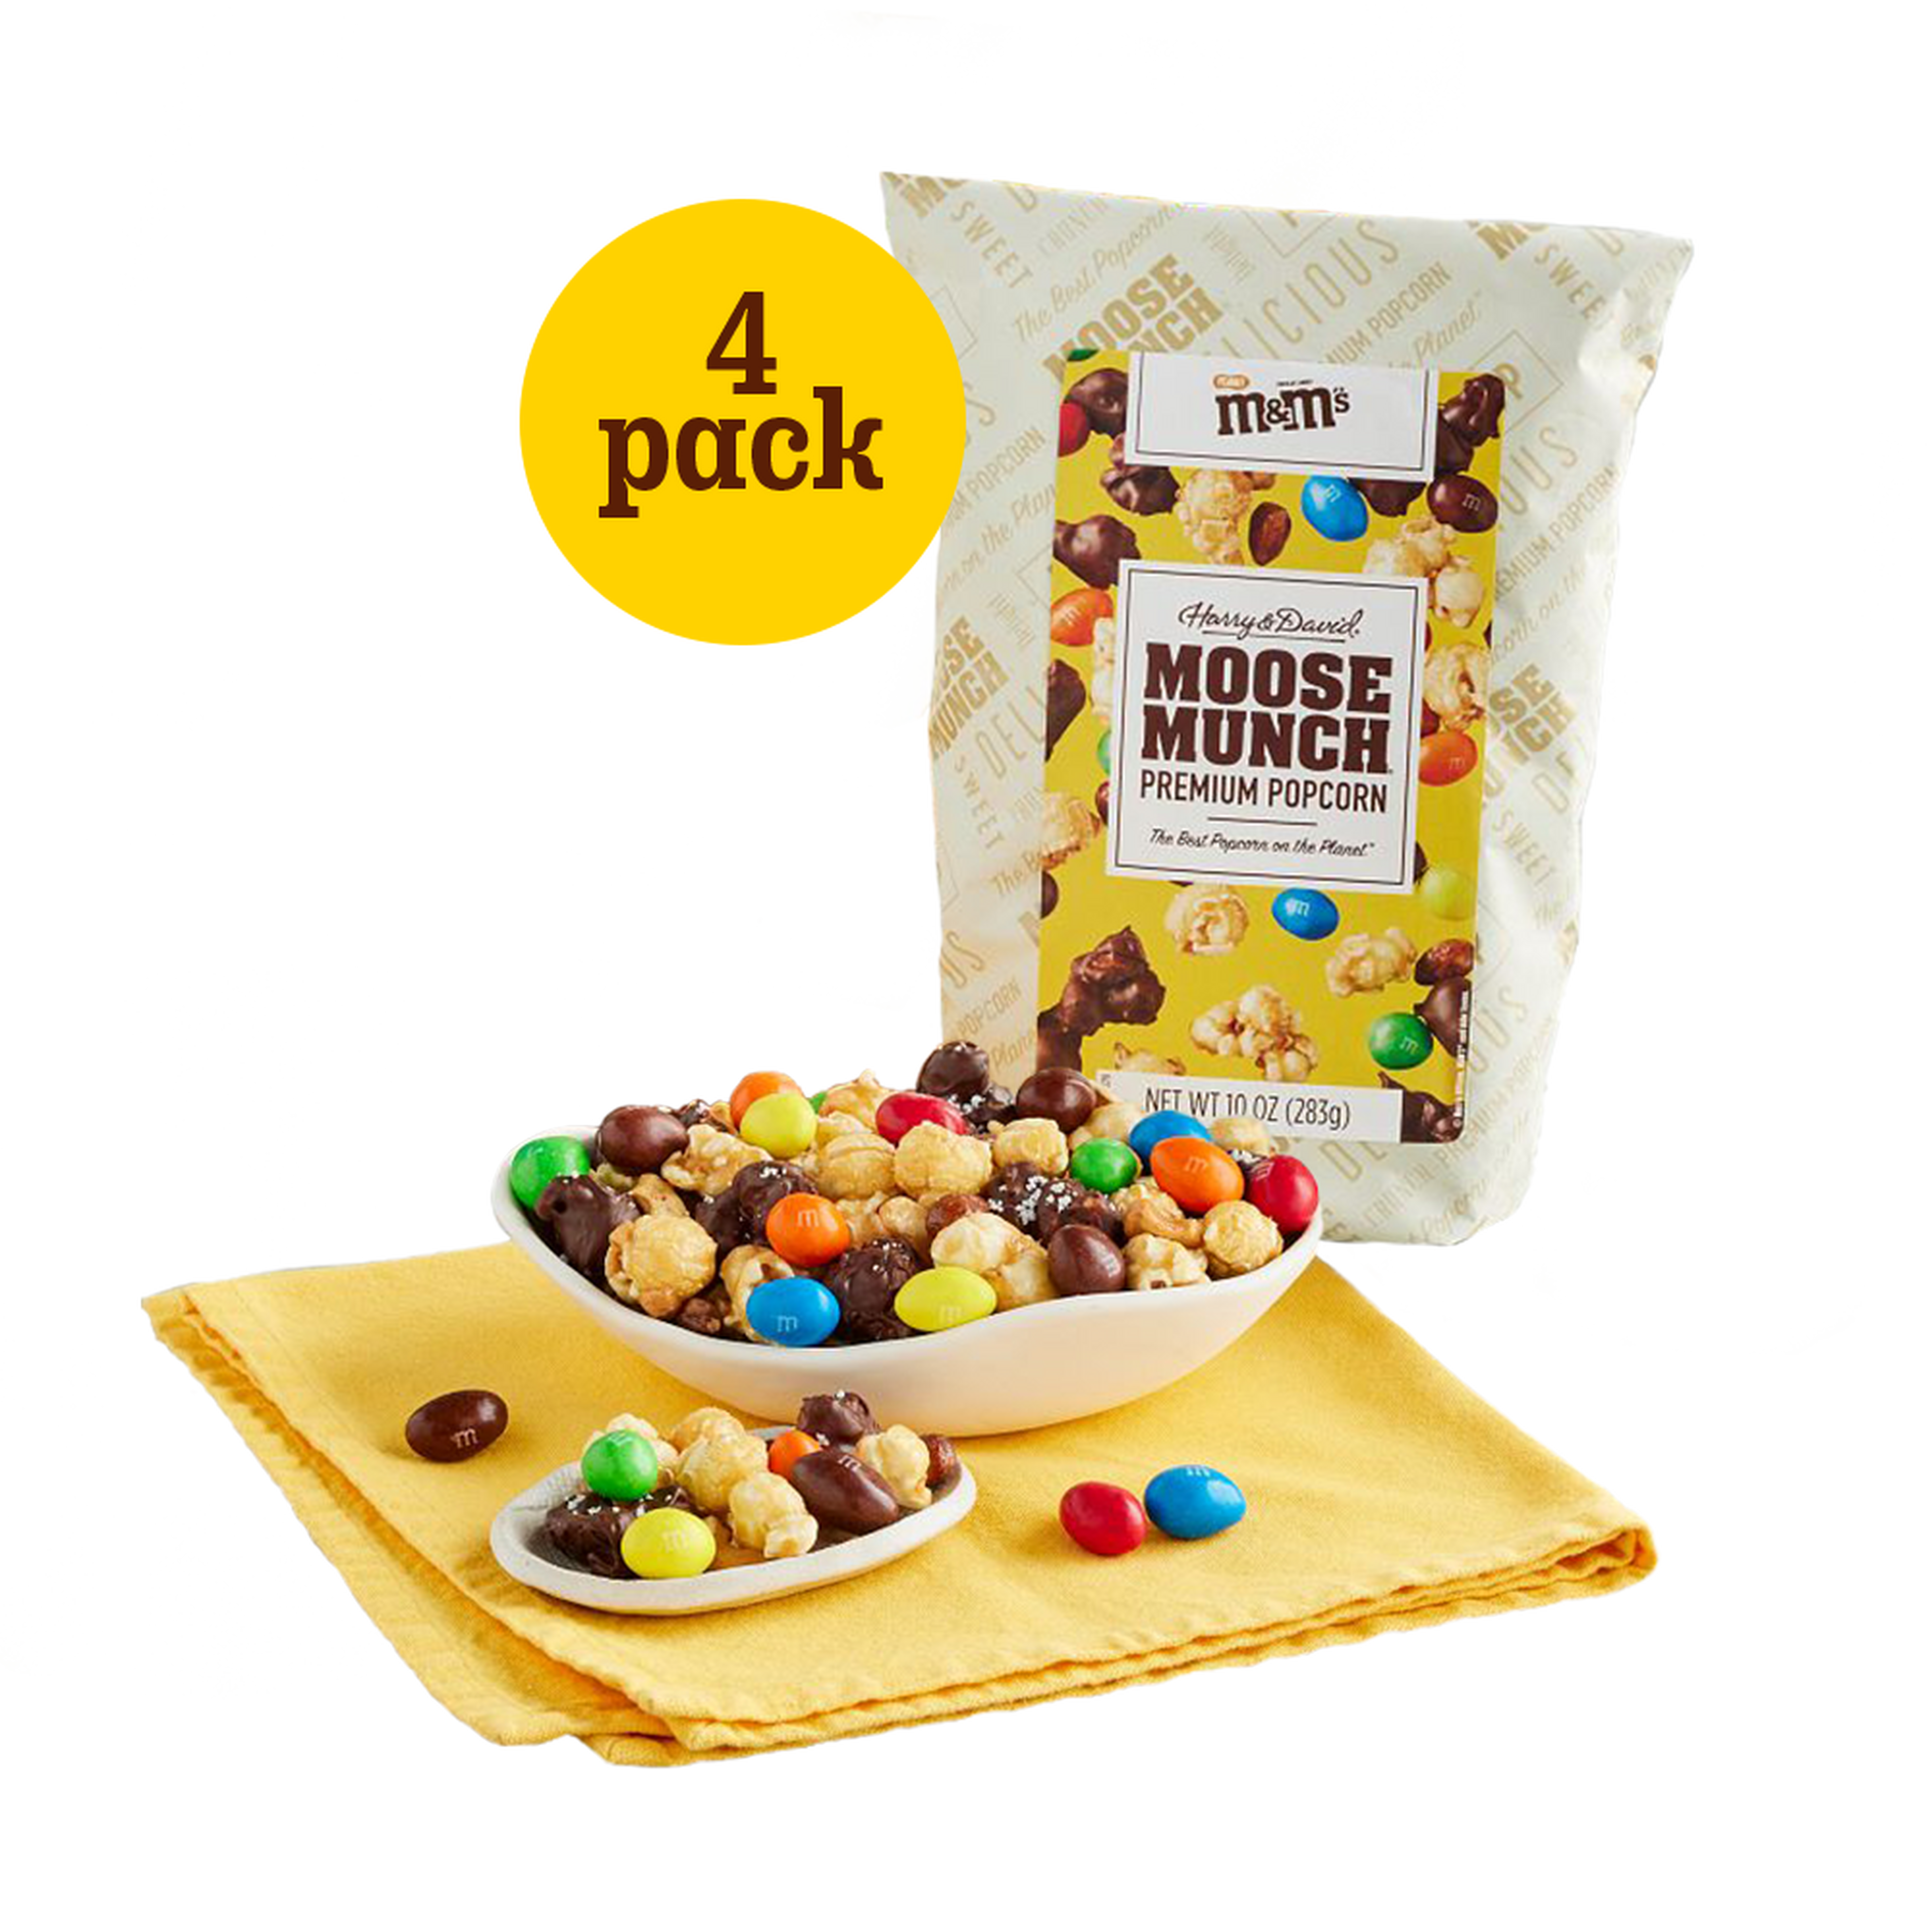 Moose Munch Premium Popcorn with Peanut M&M'S 4 Pack 1